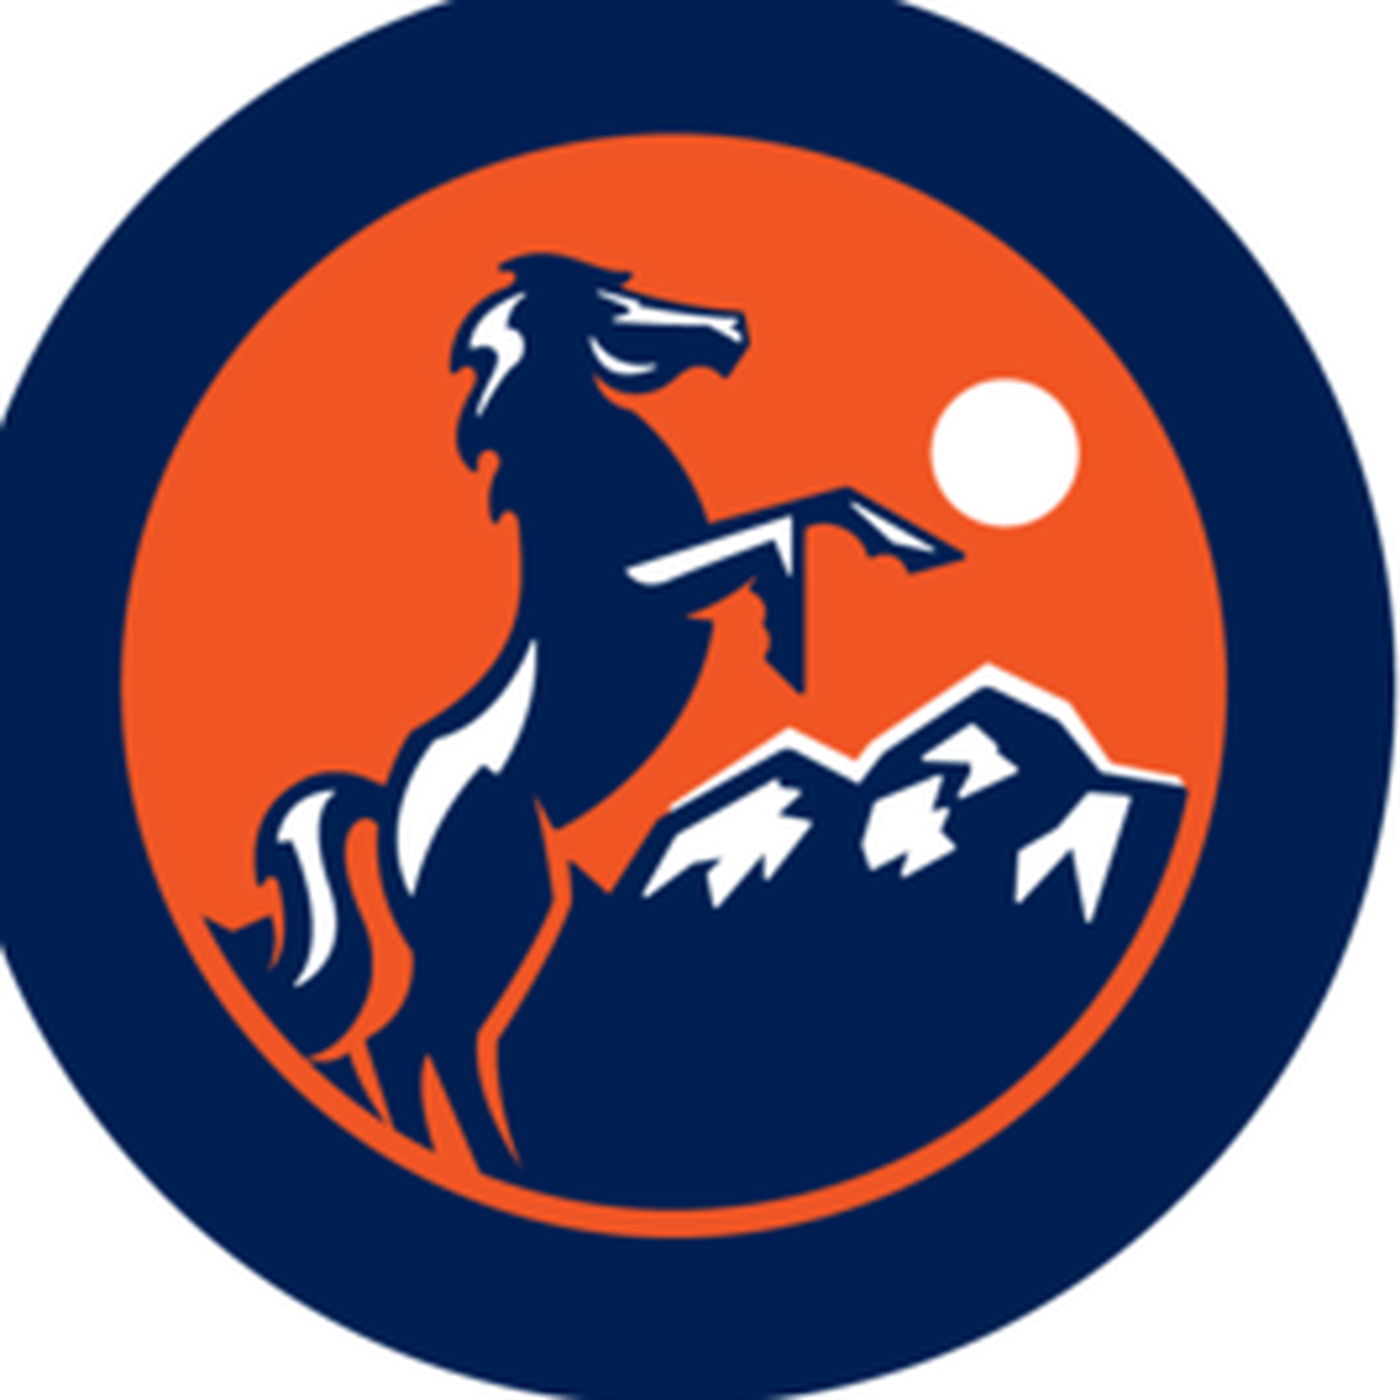 Denver Broncos Logo PNG Image File